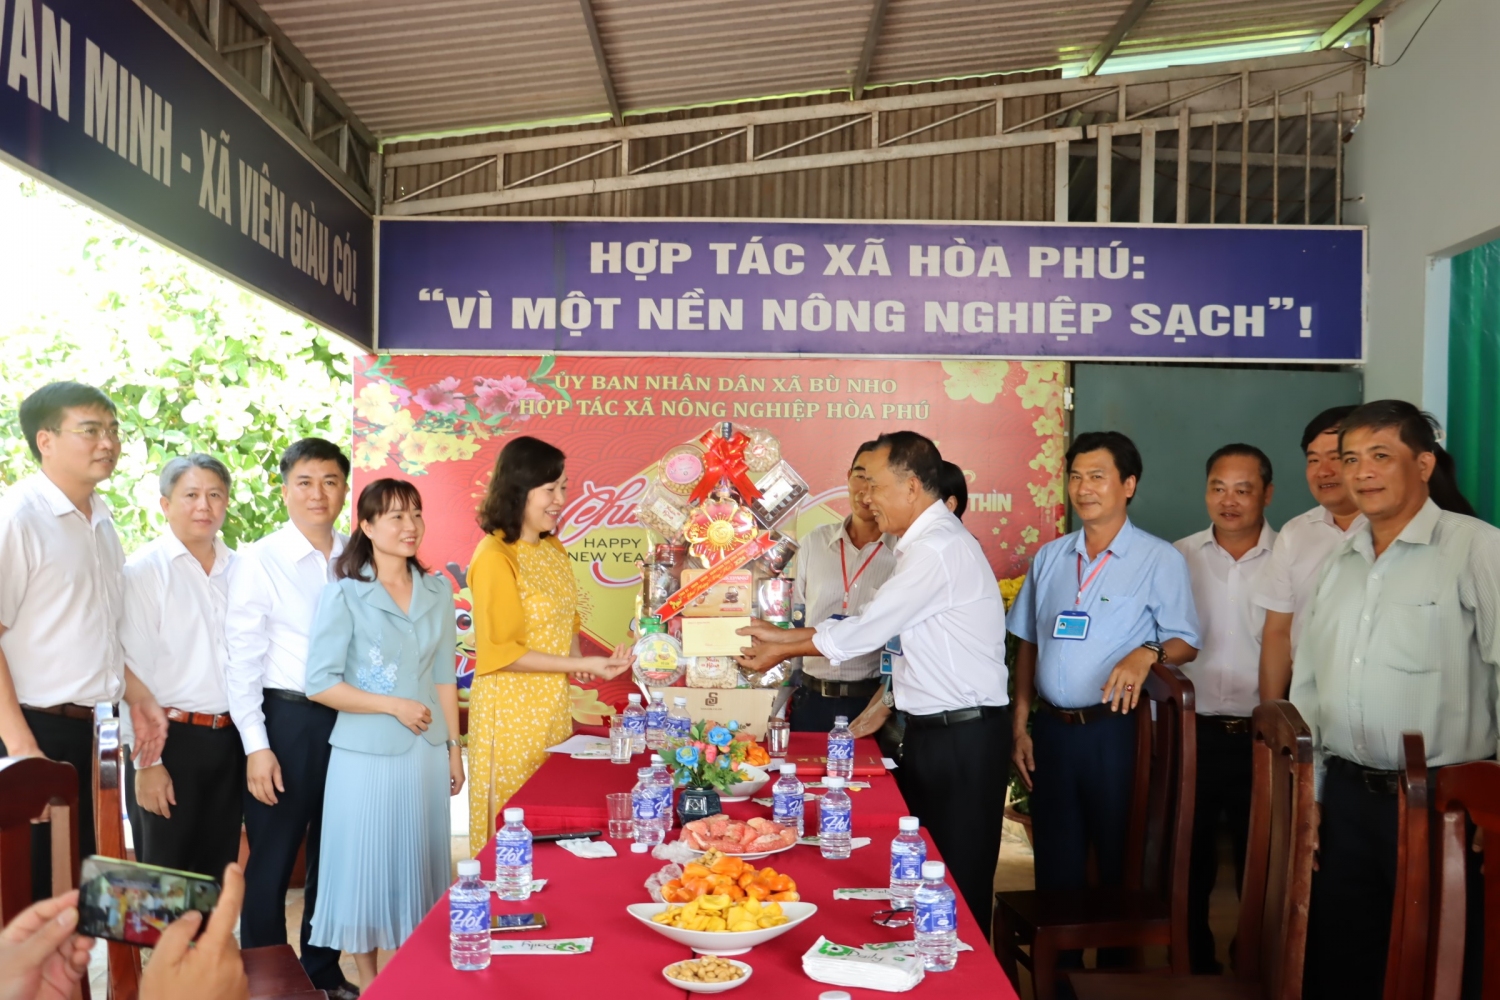 Đồng chí Huỳnh Thị Hằng – Phó Bí thư Thường trực Tỉnh ủy, Chủ tịch HĐND tỉnh thăm, tặng quà chúc tết HTX Hòa Phú